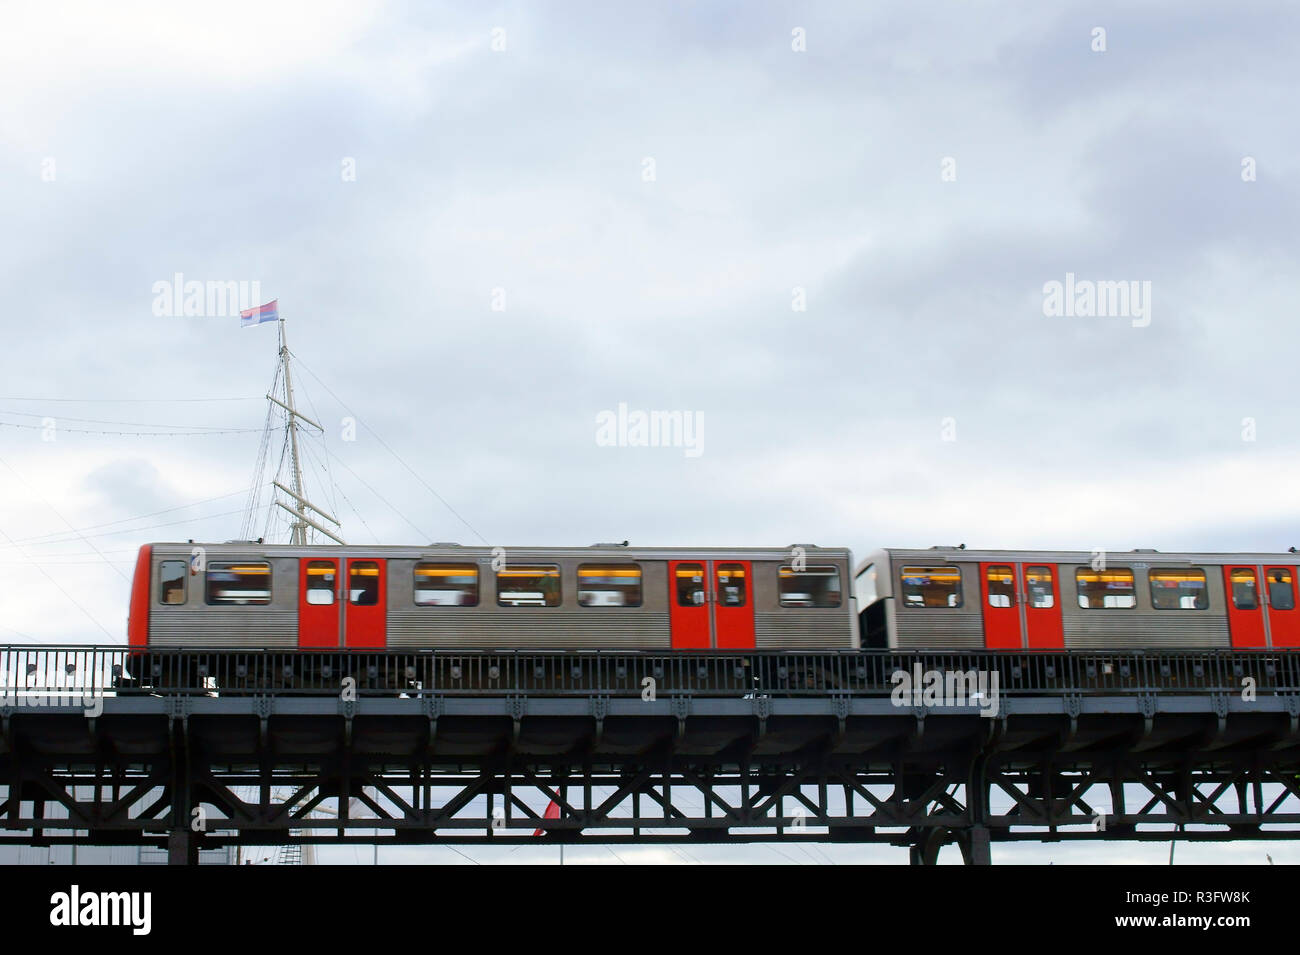 tram Stock Photo